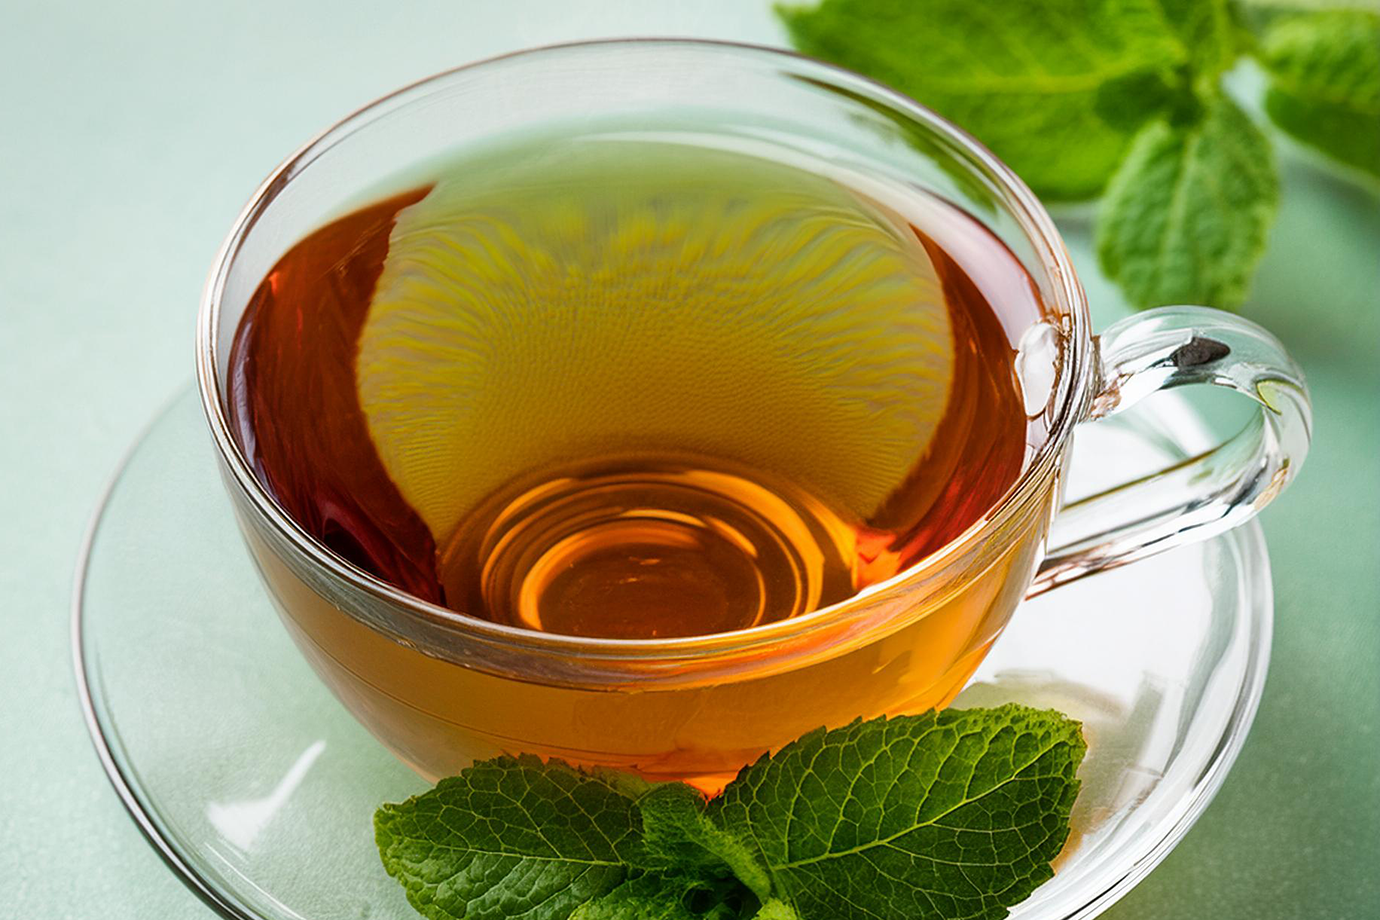 MINT MYSTIQUE — Esse chá verde com hortelã é muito usado como digestivo, perfeito após uma refeição para acalmar o estômago. A hortelã é famosa por tranquilizar a mente e aguçar os sentidos, tornando esse chá perfeito para qualquer hora do dia. Particularmente refrescante nos dias de verão.